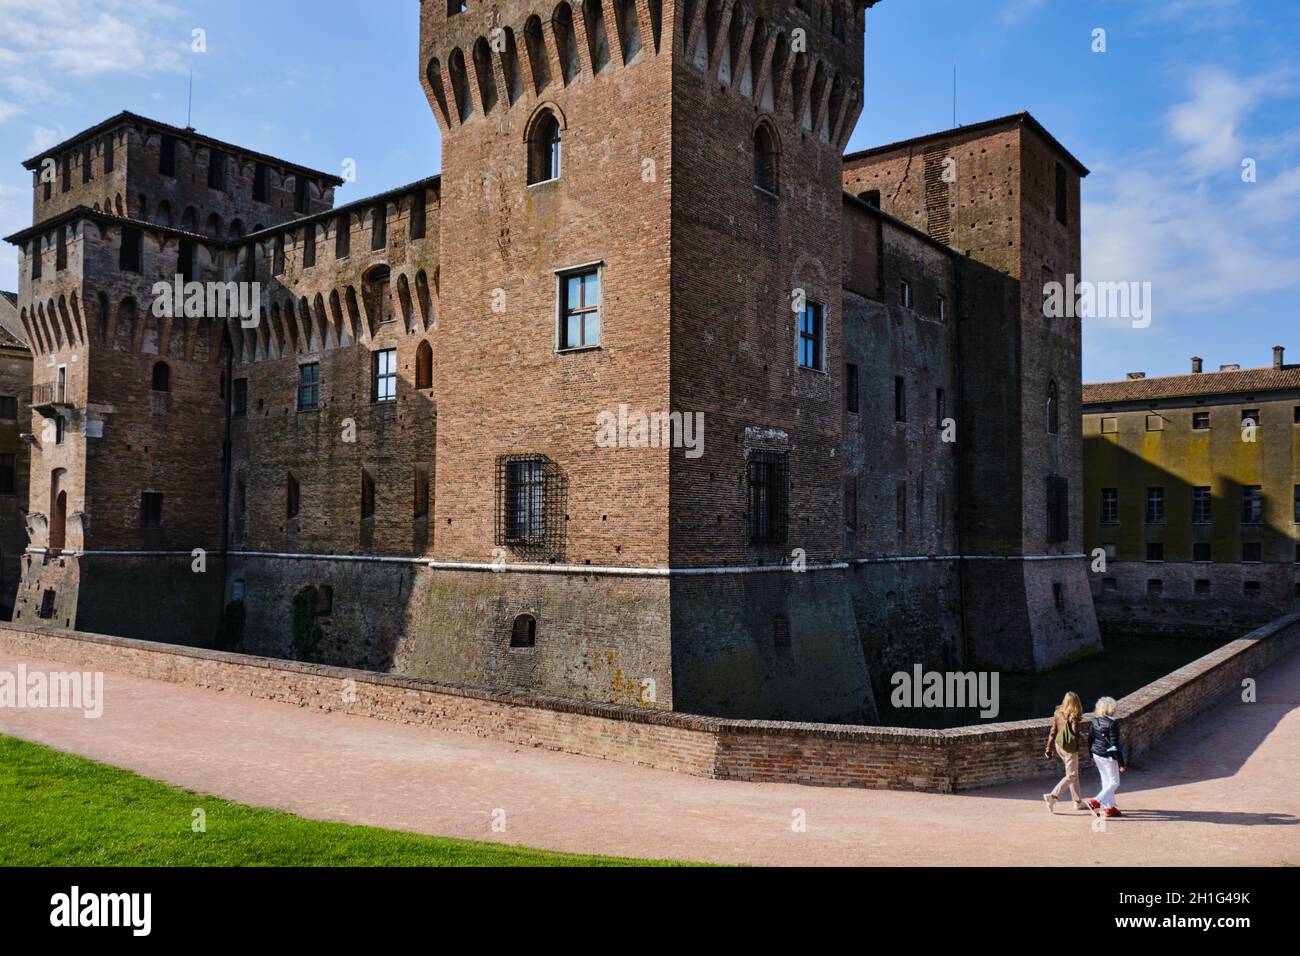 Forteresse médiévale, château de Gonzaga Saint George (Giorgio) à Mantoue (Mantova), Lombardie, Italie Banque D'Images